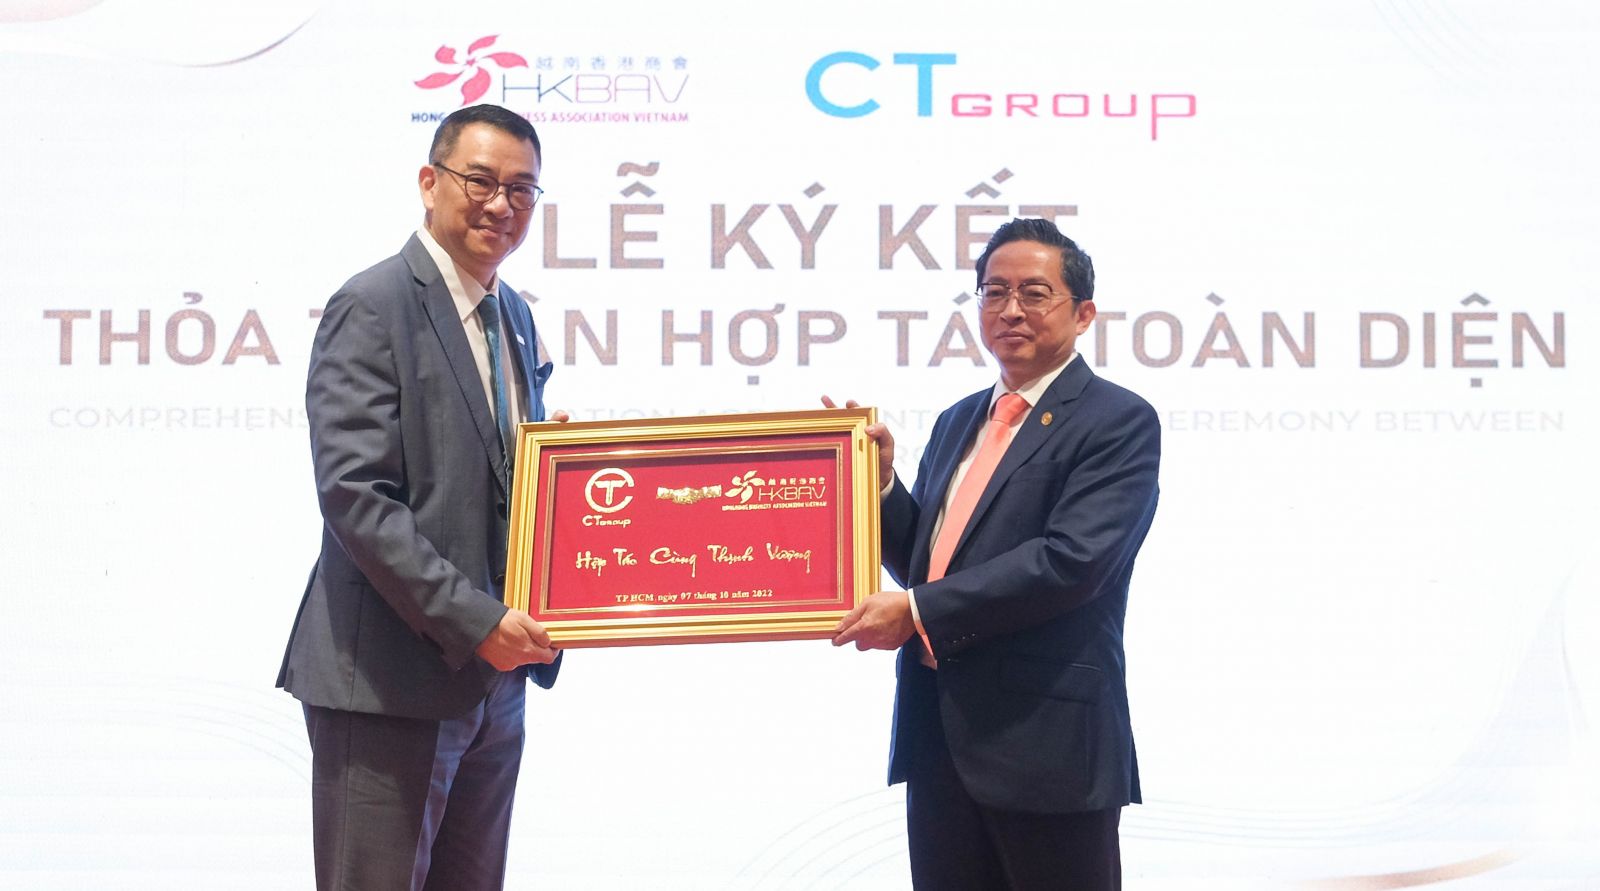 CT Group và Hiệp Hội Doanh nghiệp Hồng Kông Việt Nam trở thành đối tác toàn diện của nhau, đảm bảo hợp tác lâu dài, bền vững để phát triển các tiềm năng sẵn có.